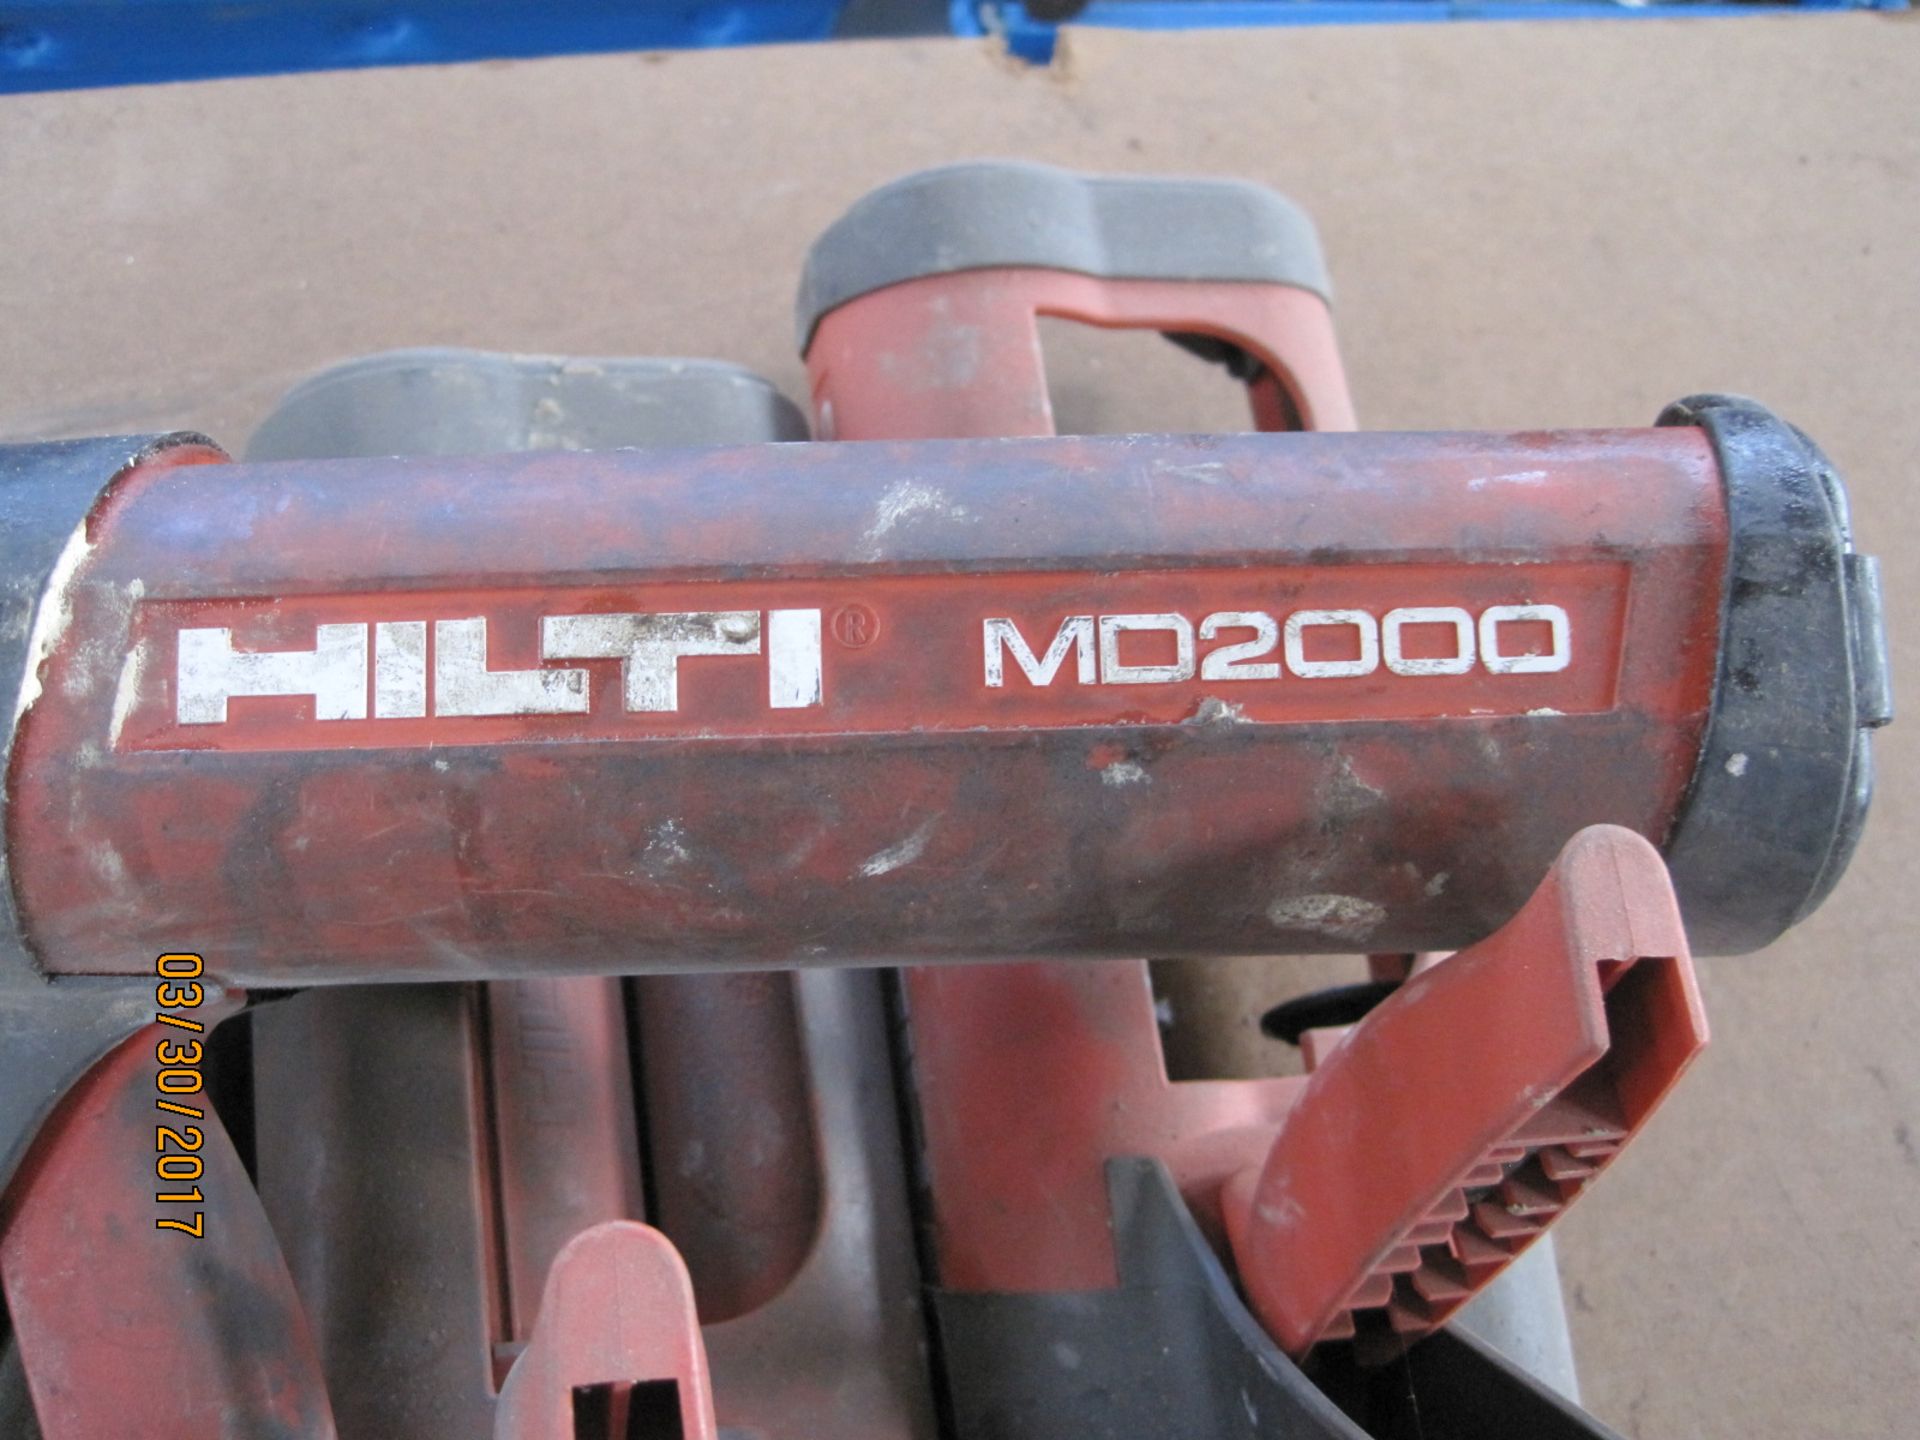 Hilti MD 2000 epoxy guns - Image 2 of 2